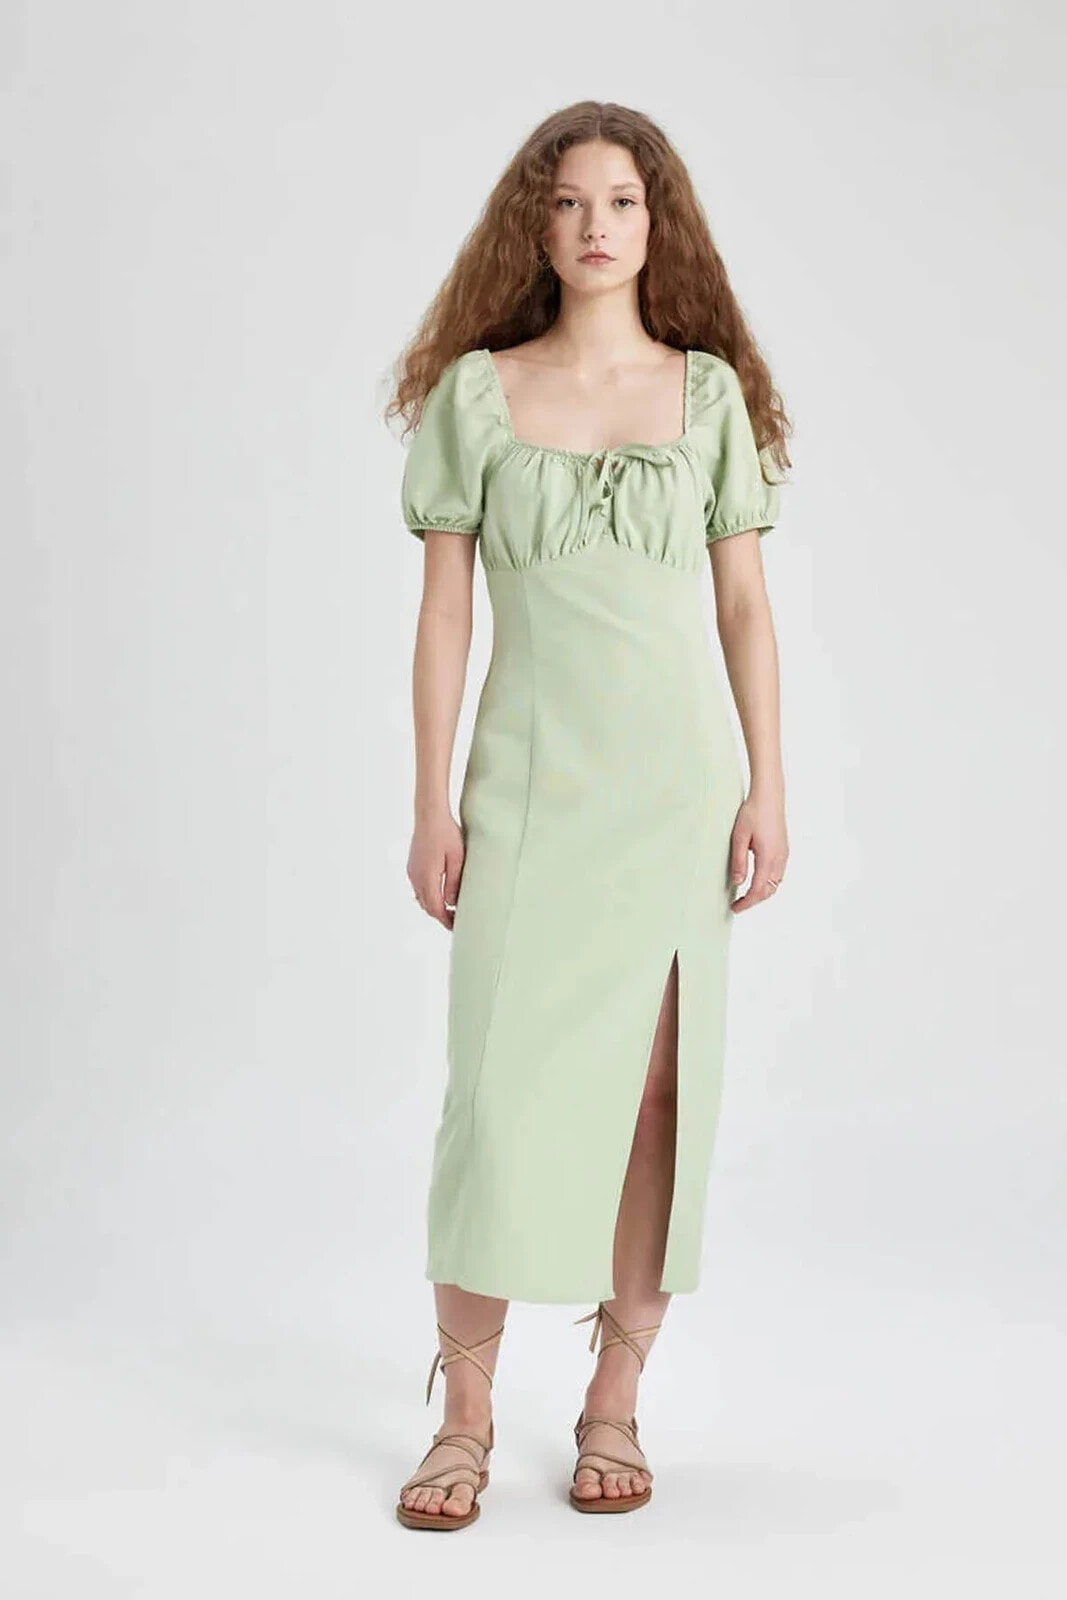 Kadın Elbise Mint Yeşili B0128AX/GN1216